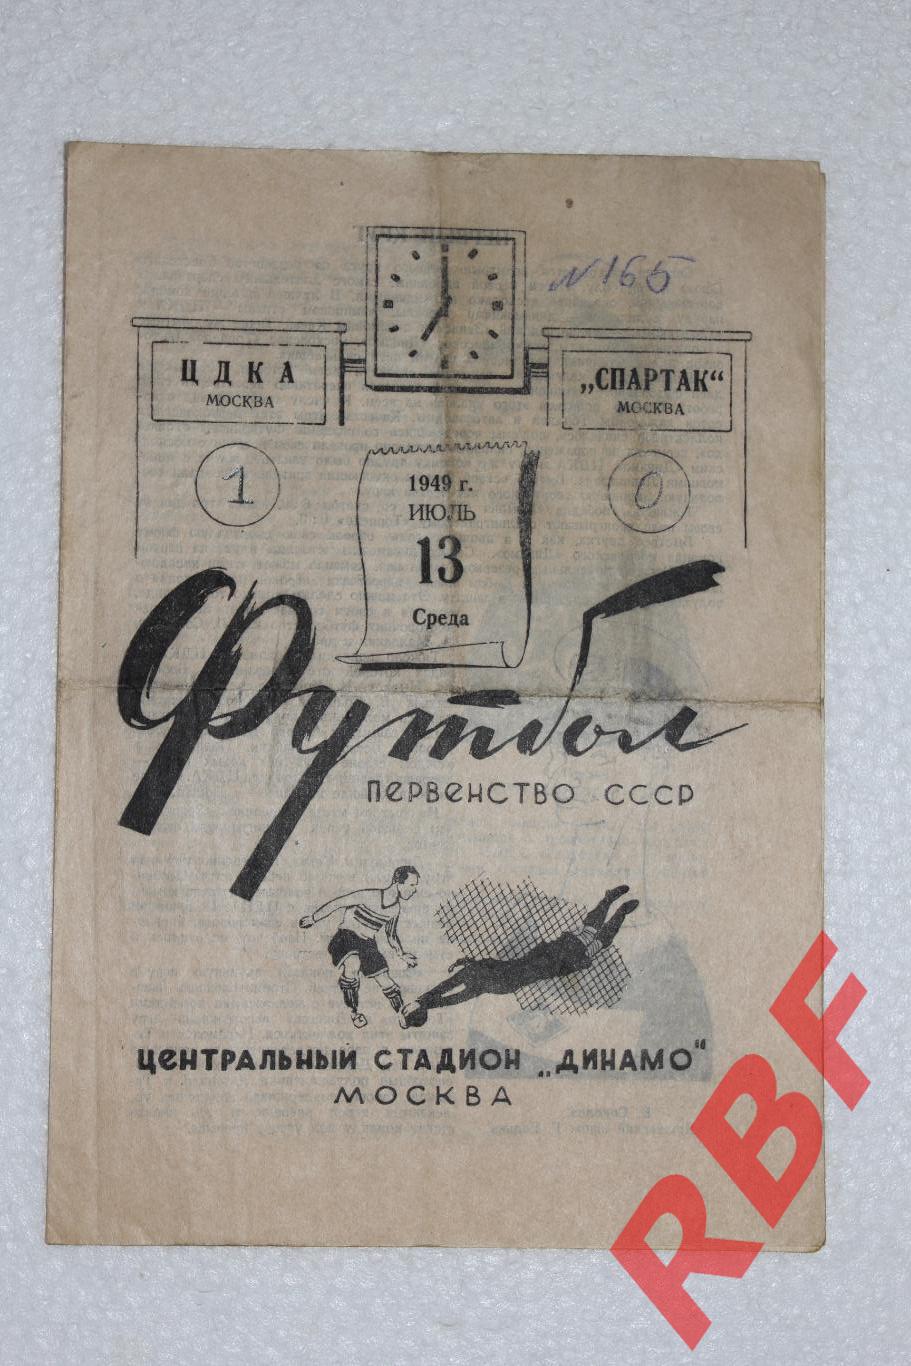 ЦДКА - Спартак Москва,13 июля 1949